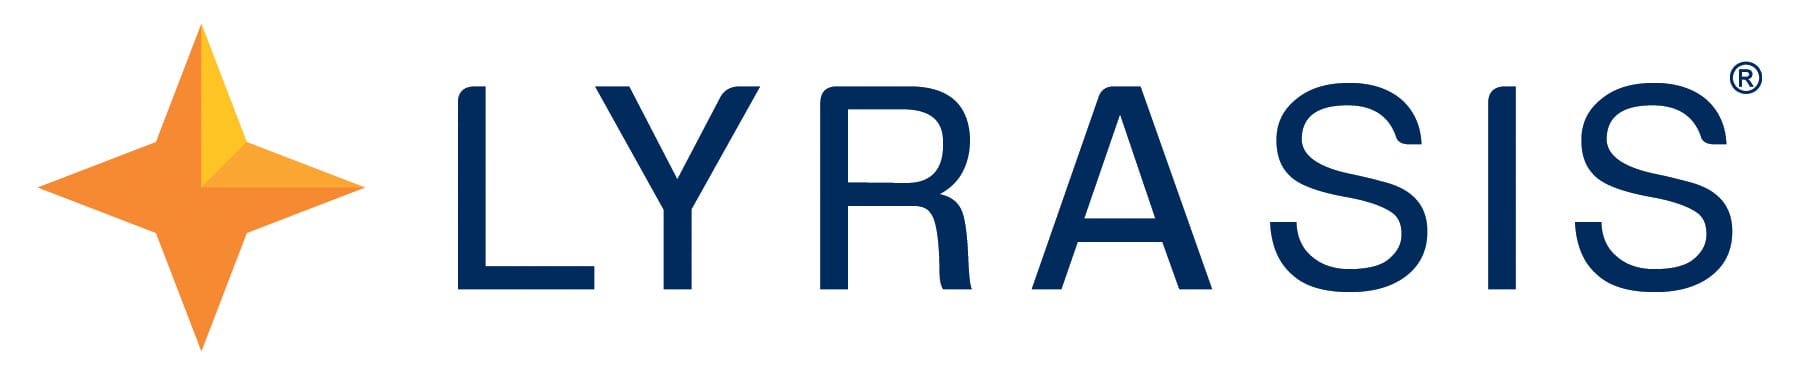 Lyrasis logo